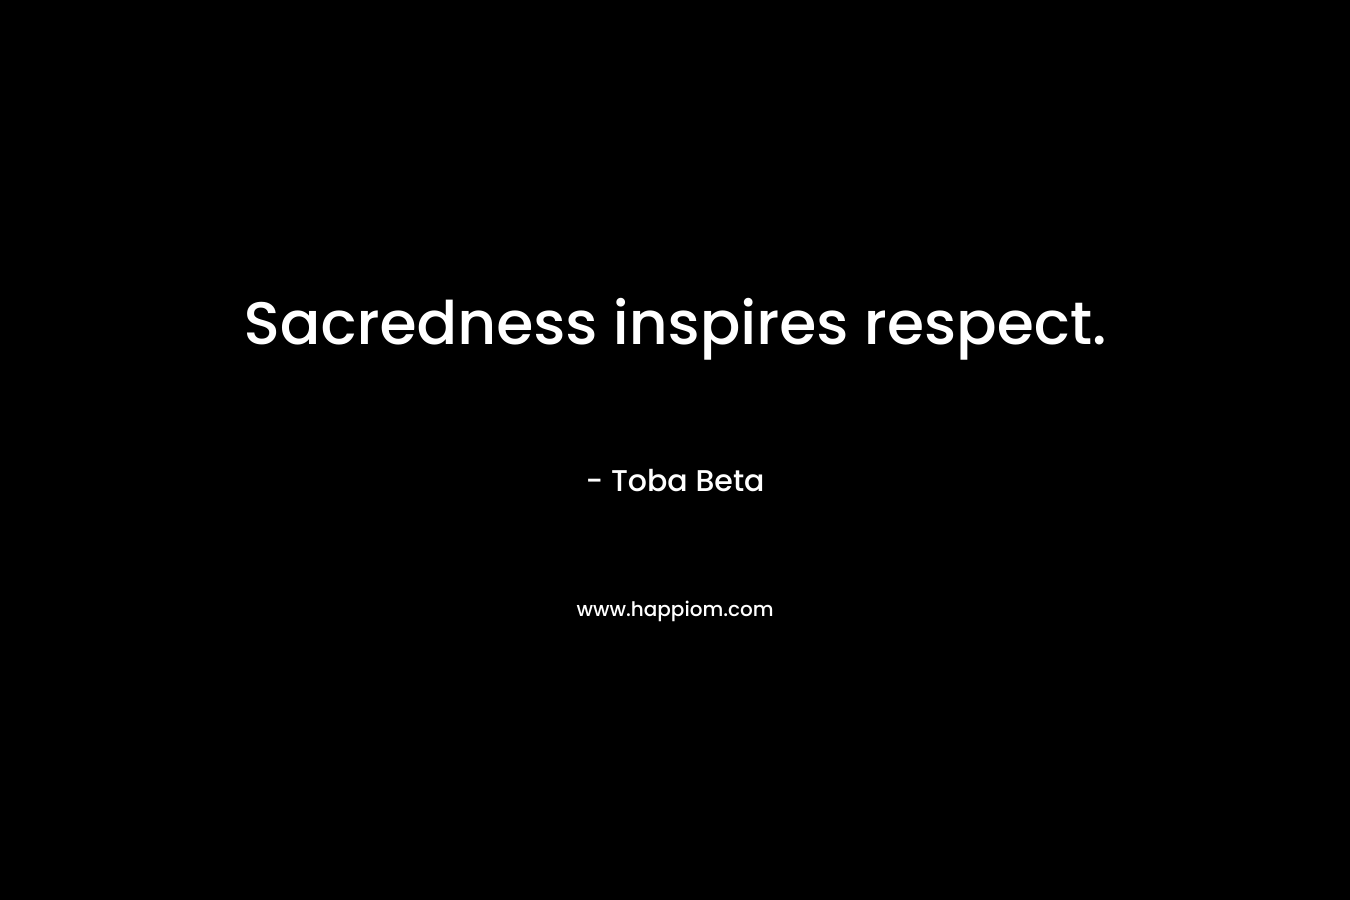 Sacredness inspires respect.